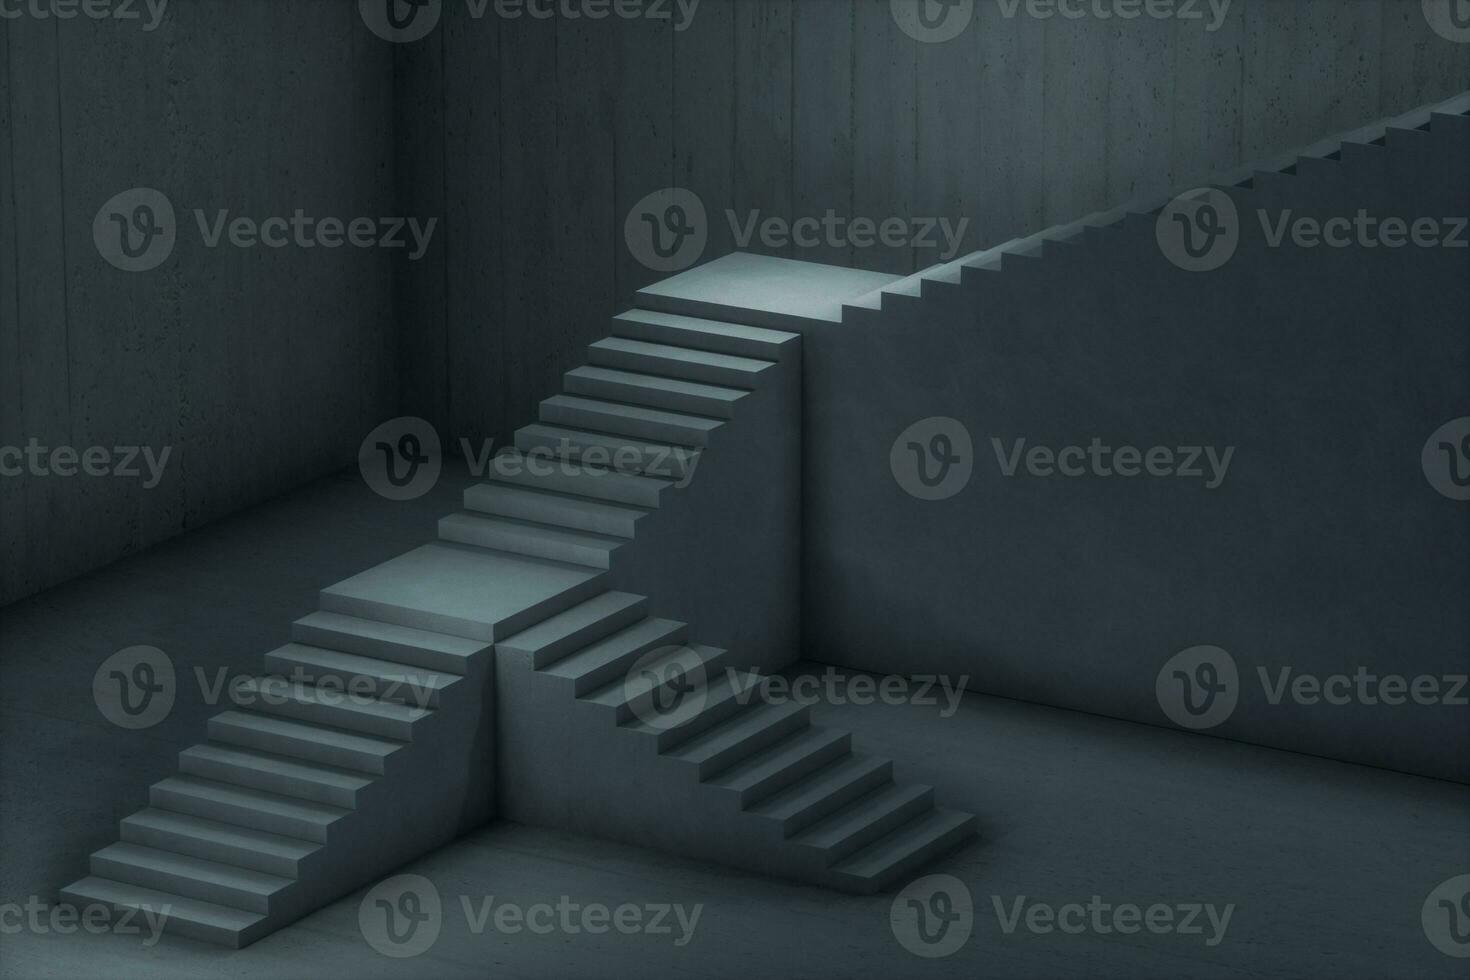 das Treppe im das dunkel Keller, 3d Wiedergabe. foto